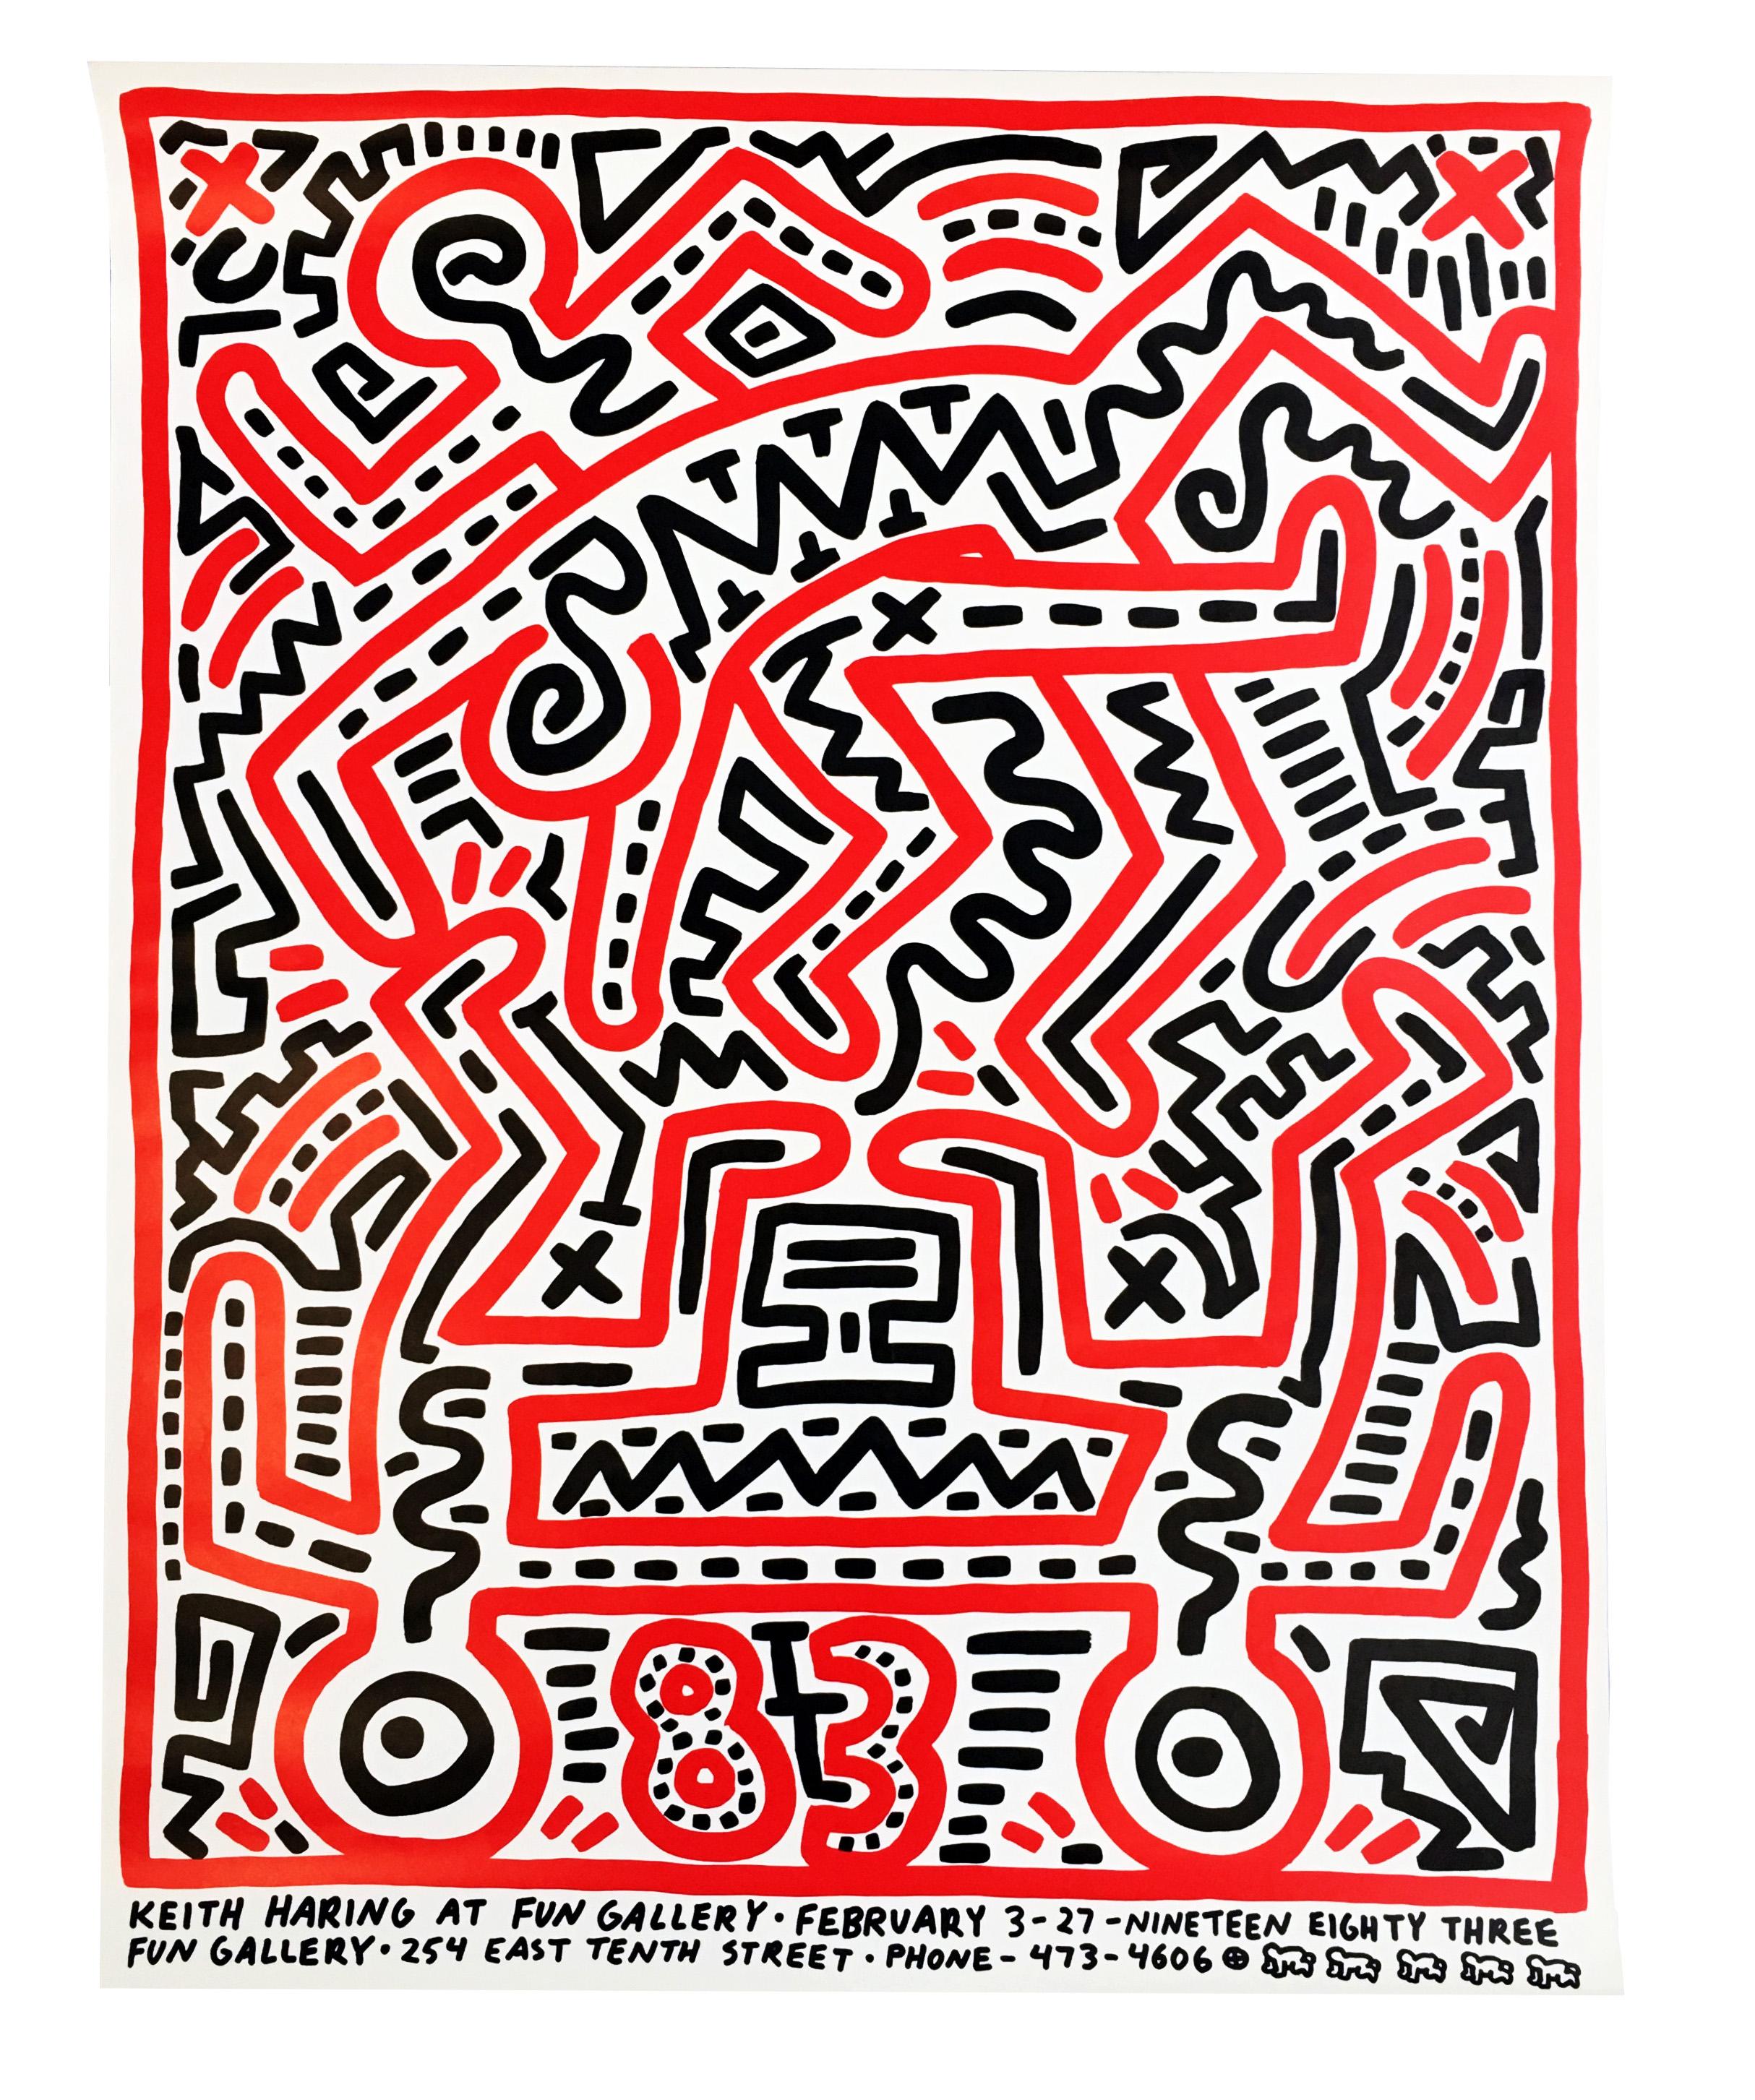 Keith Haring Fun Gallery 1983:
Originales illustriertes Ausstellungsplakat von Keith Haring aus dem Jahr 1983, das anlässlich von Harings historischer Ausstellung 1983 in der Fun Gallery im East Village veröffentlicht wurde. Eine klassische